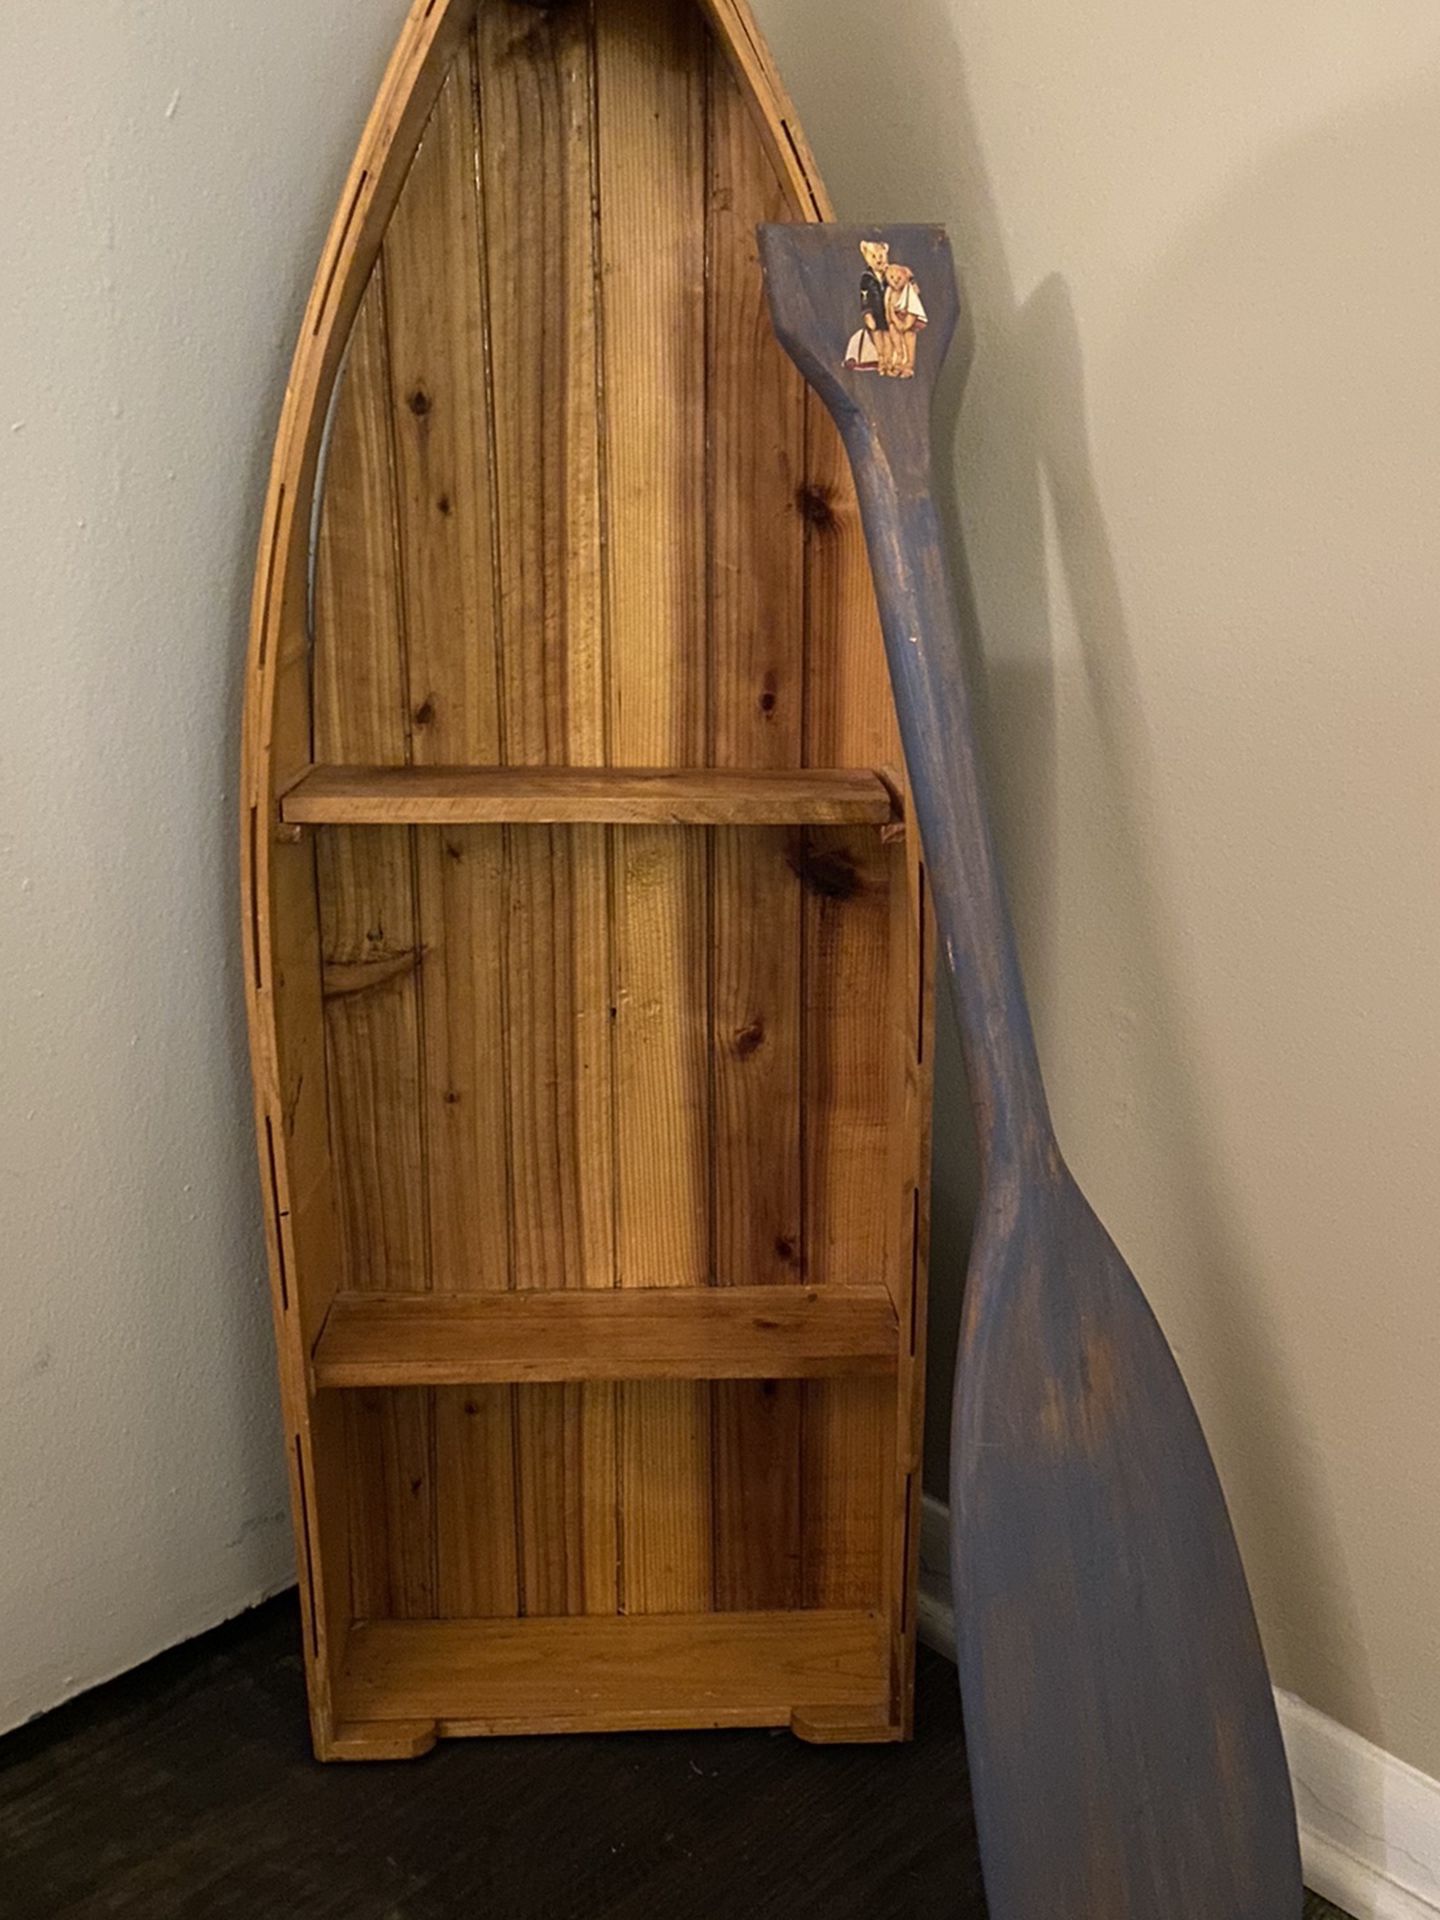 Freestanding Boat Shelf Decor With Oar